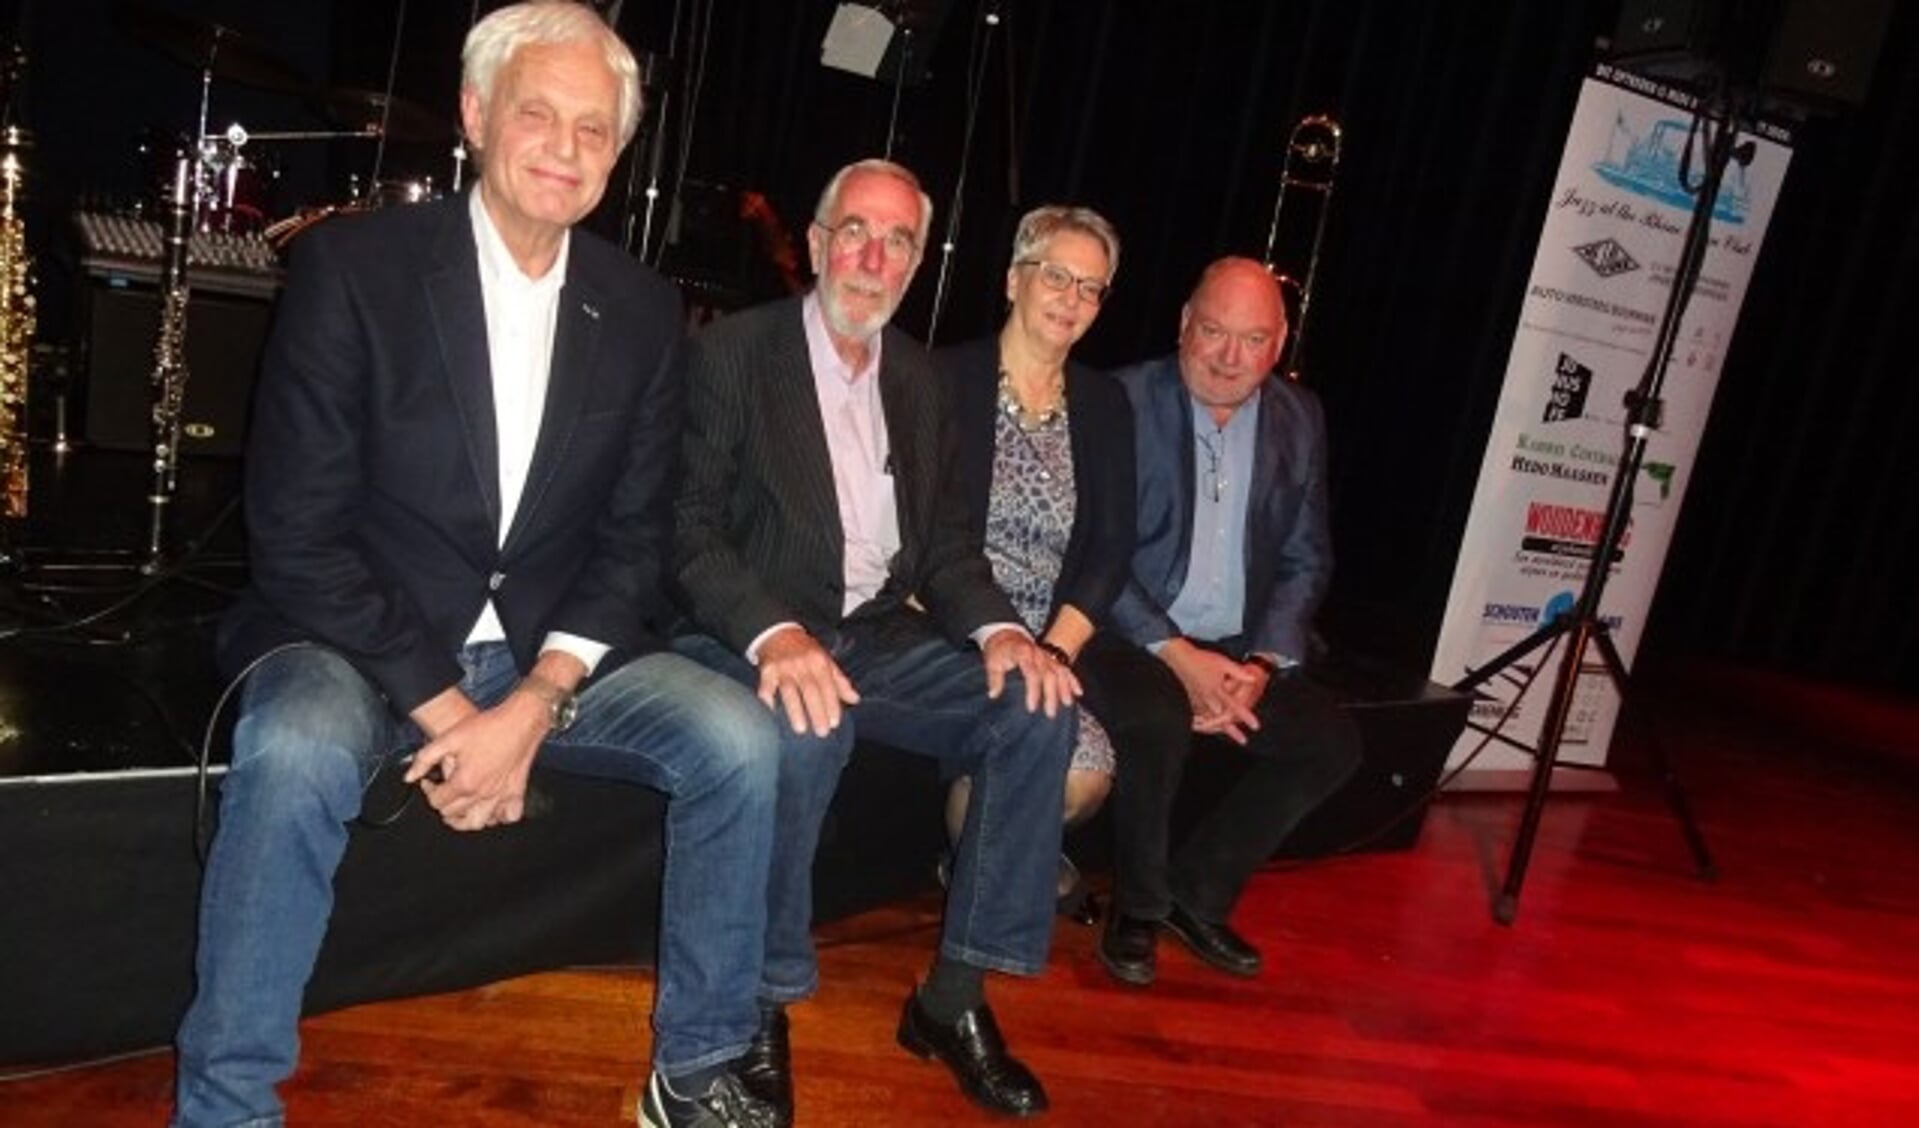 De Wageningse jazzclub laat haar jubileumfeest aansluiten bij Koningsdag 2018. Het bestuur bestaat uit: vlnr. Gerard Gerritsen, Oswald Tiemessen, Wilma Oudsen en Peter Duym (foto Jan Boer)